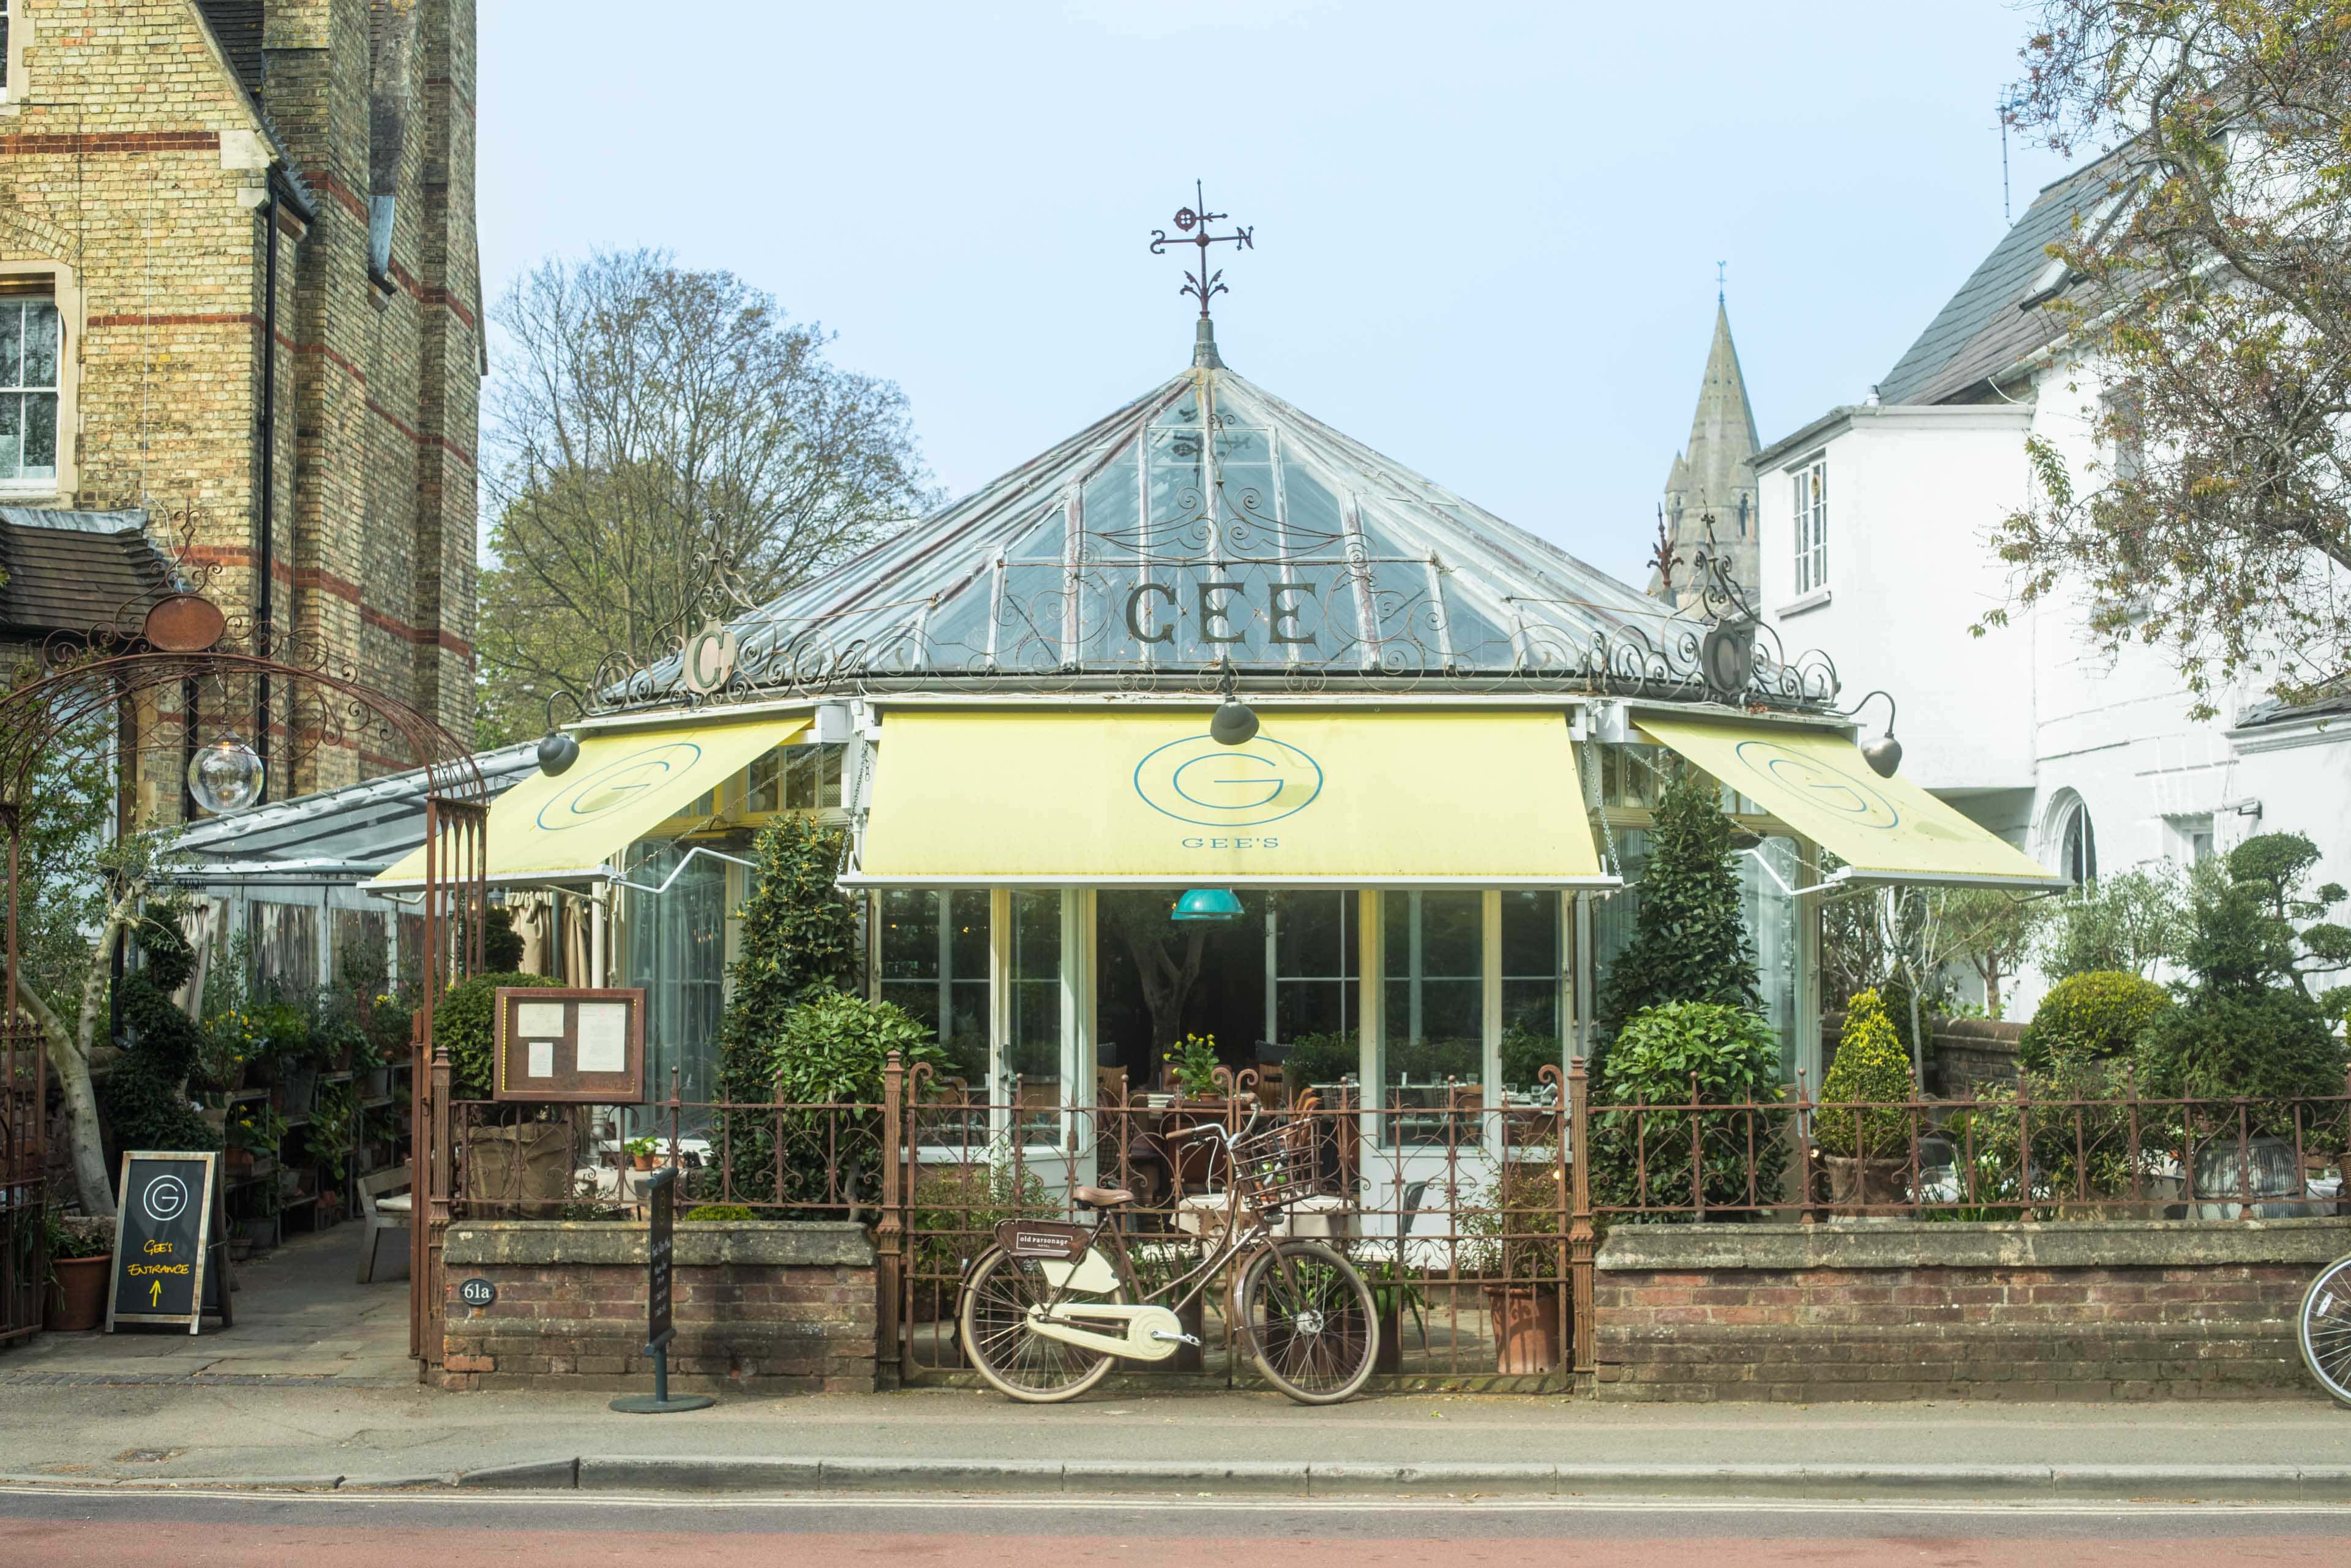 0010 - 2019 - Gees Restaurant & Bar - Oxford - High Res - Facade Spring - Web Hero